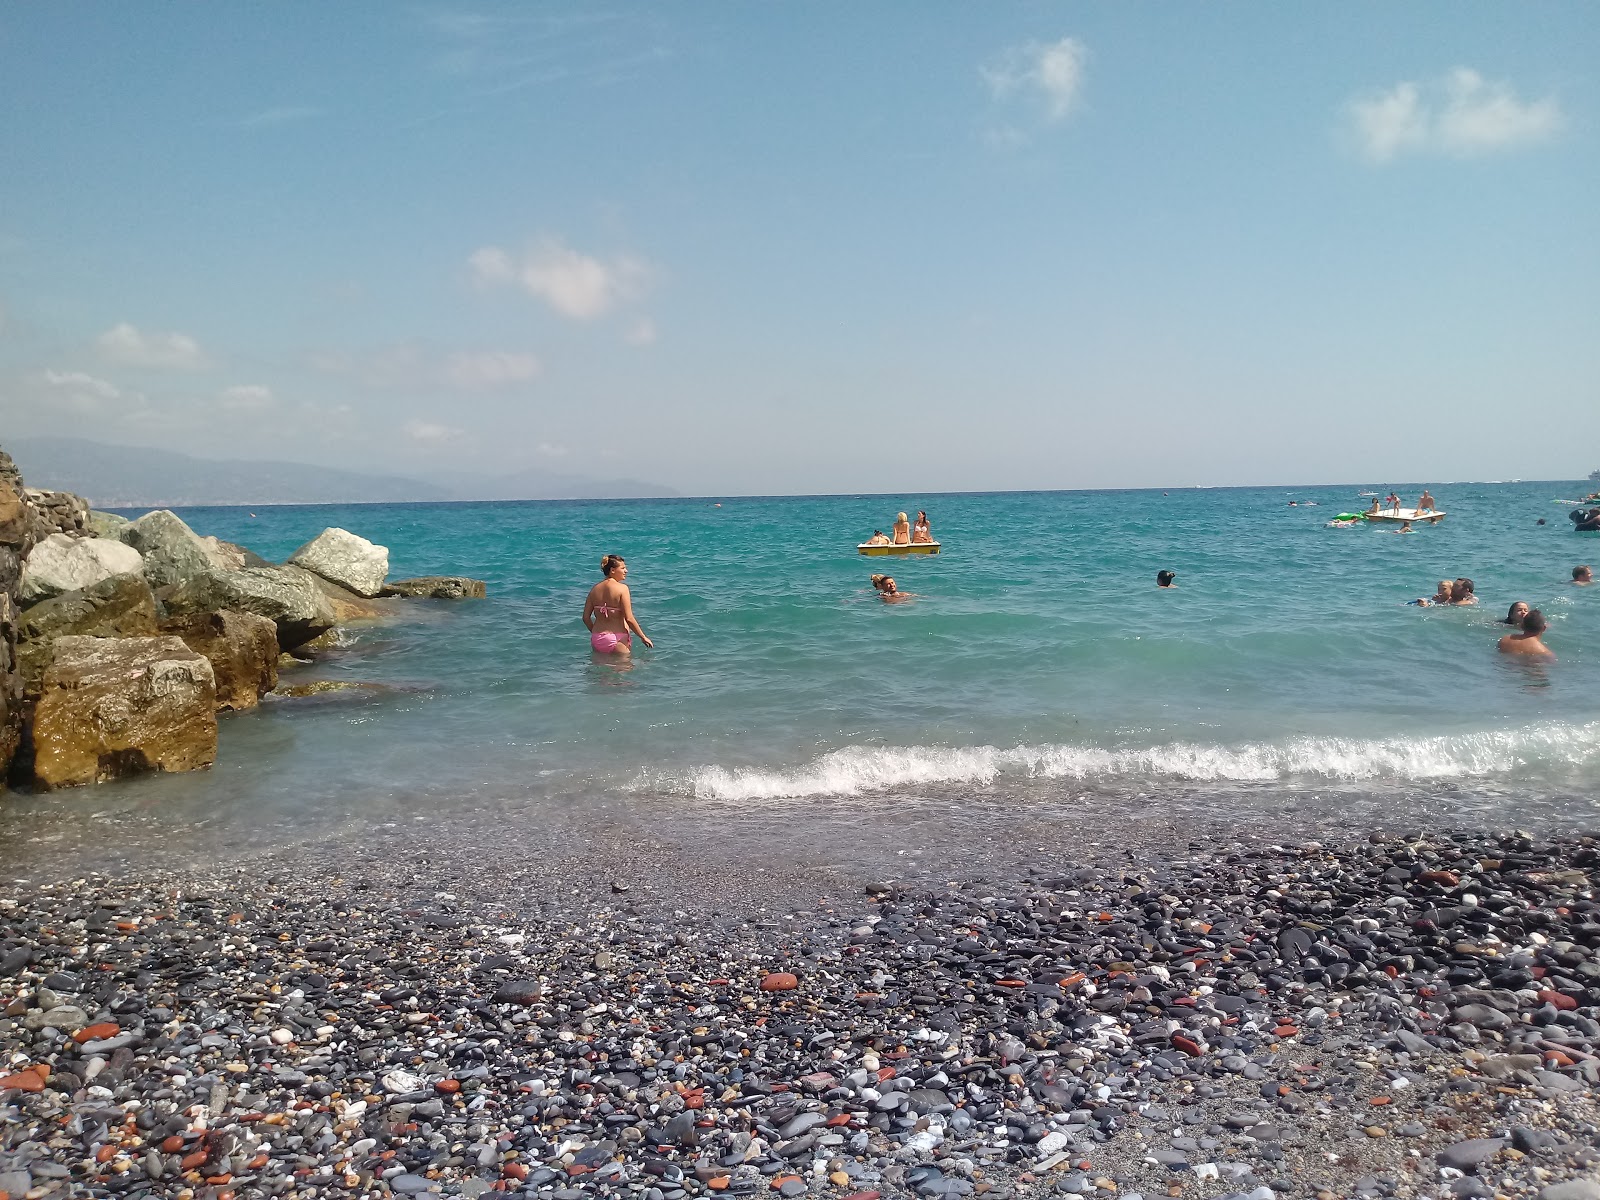 Fotografija Spiaggia Santa Margherita Ligure z modra voda površino